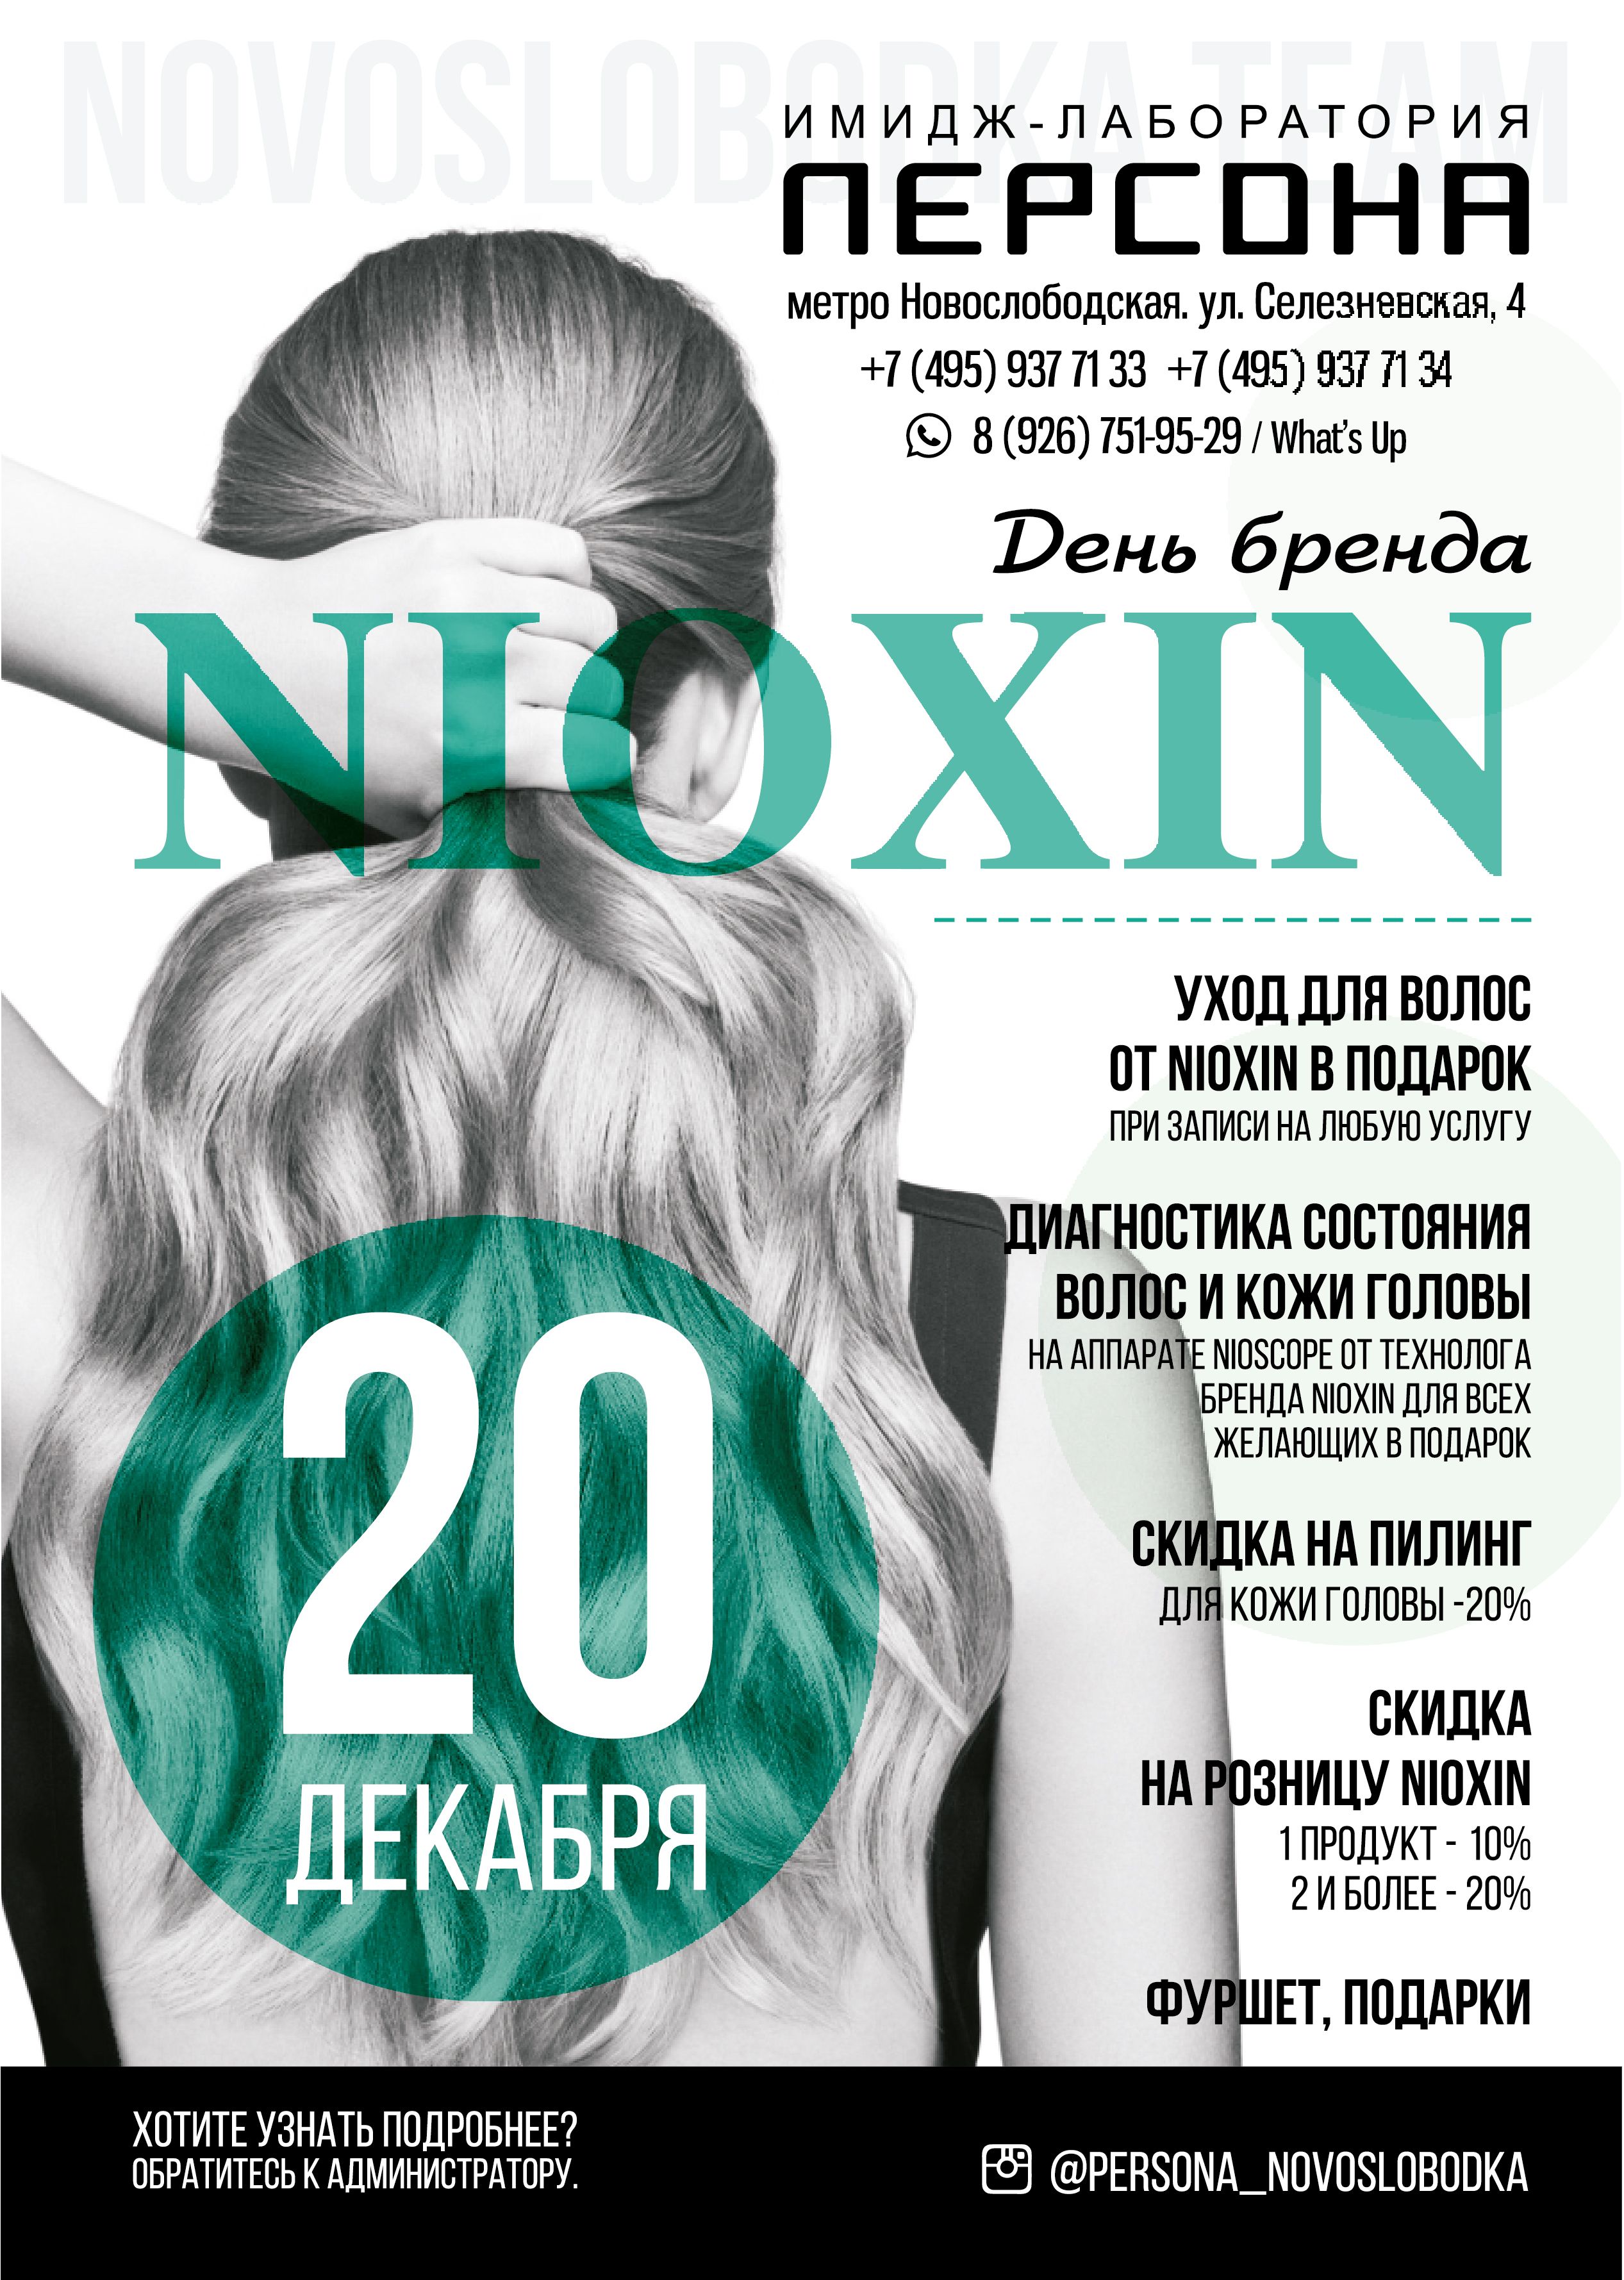 П_Новослоб_Nioxin_20-12_print.jpg